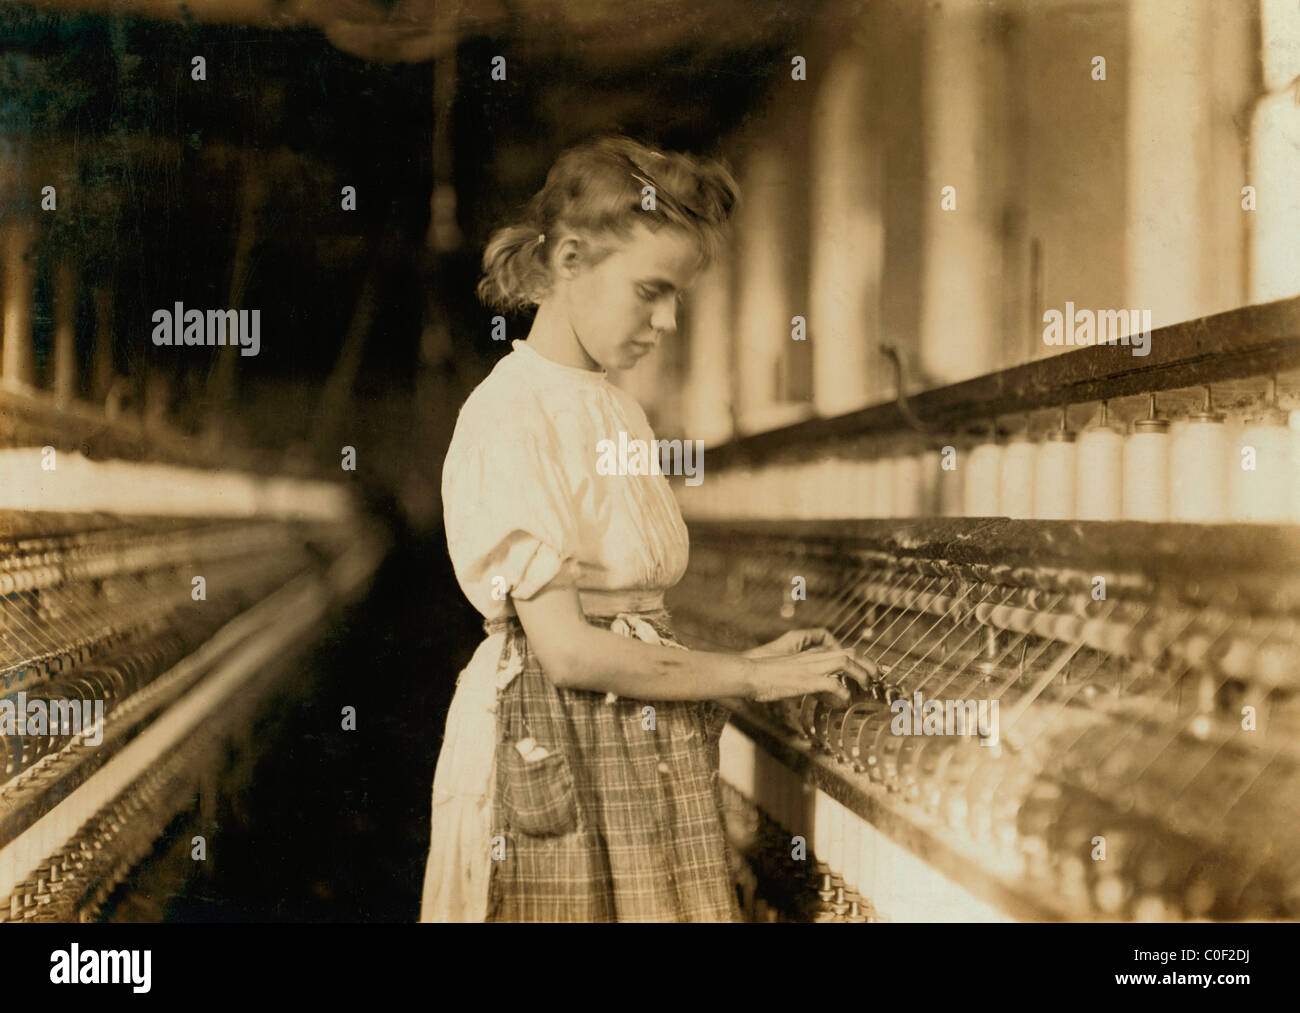 Girl travaillant dans l'usine Cherryville, Cherryville, Caroline du début des années 1900 Banque D'Images